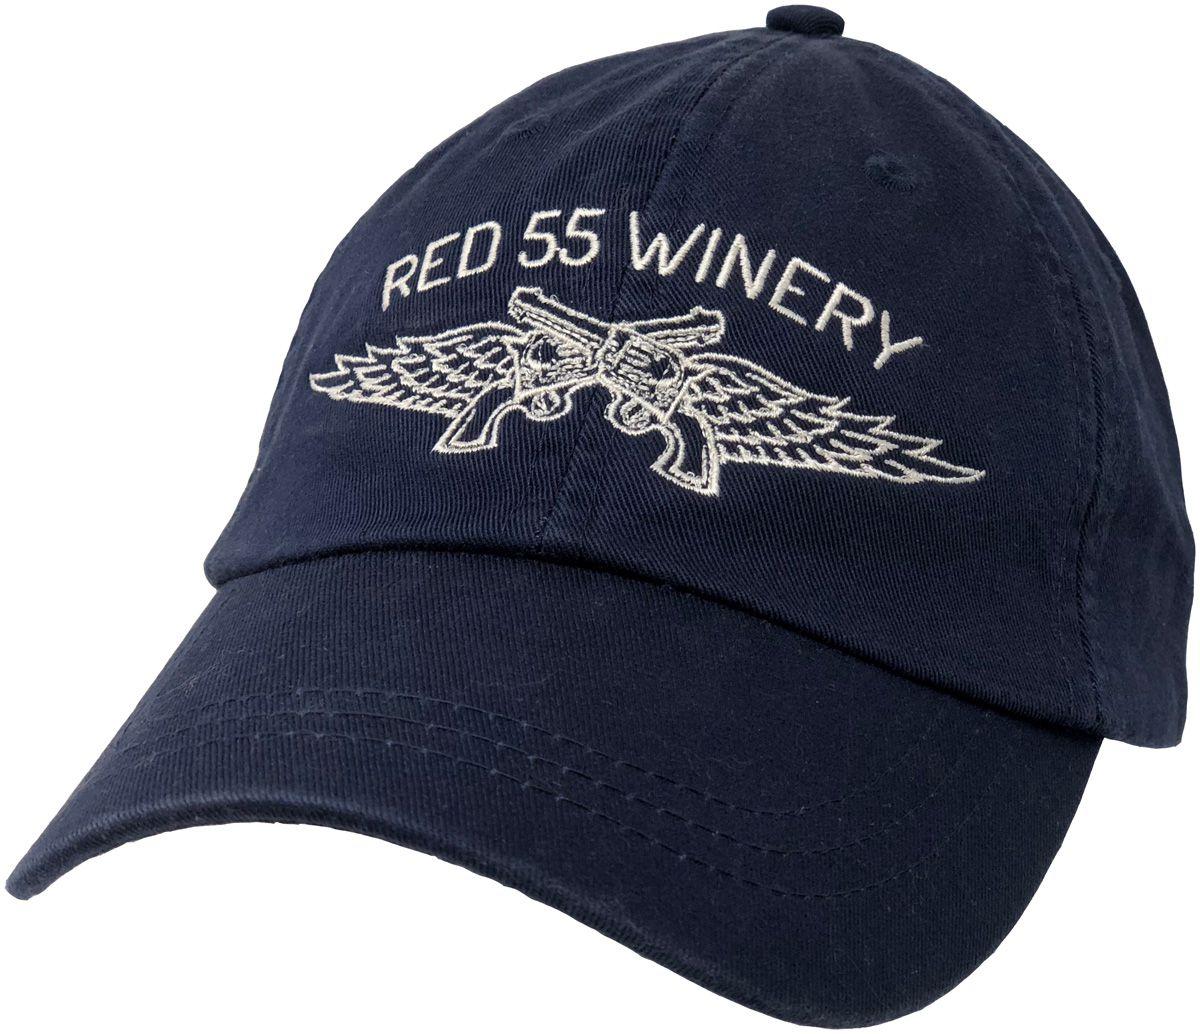 Red Navy Logo - Navy Logo Cap 55 Winery